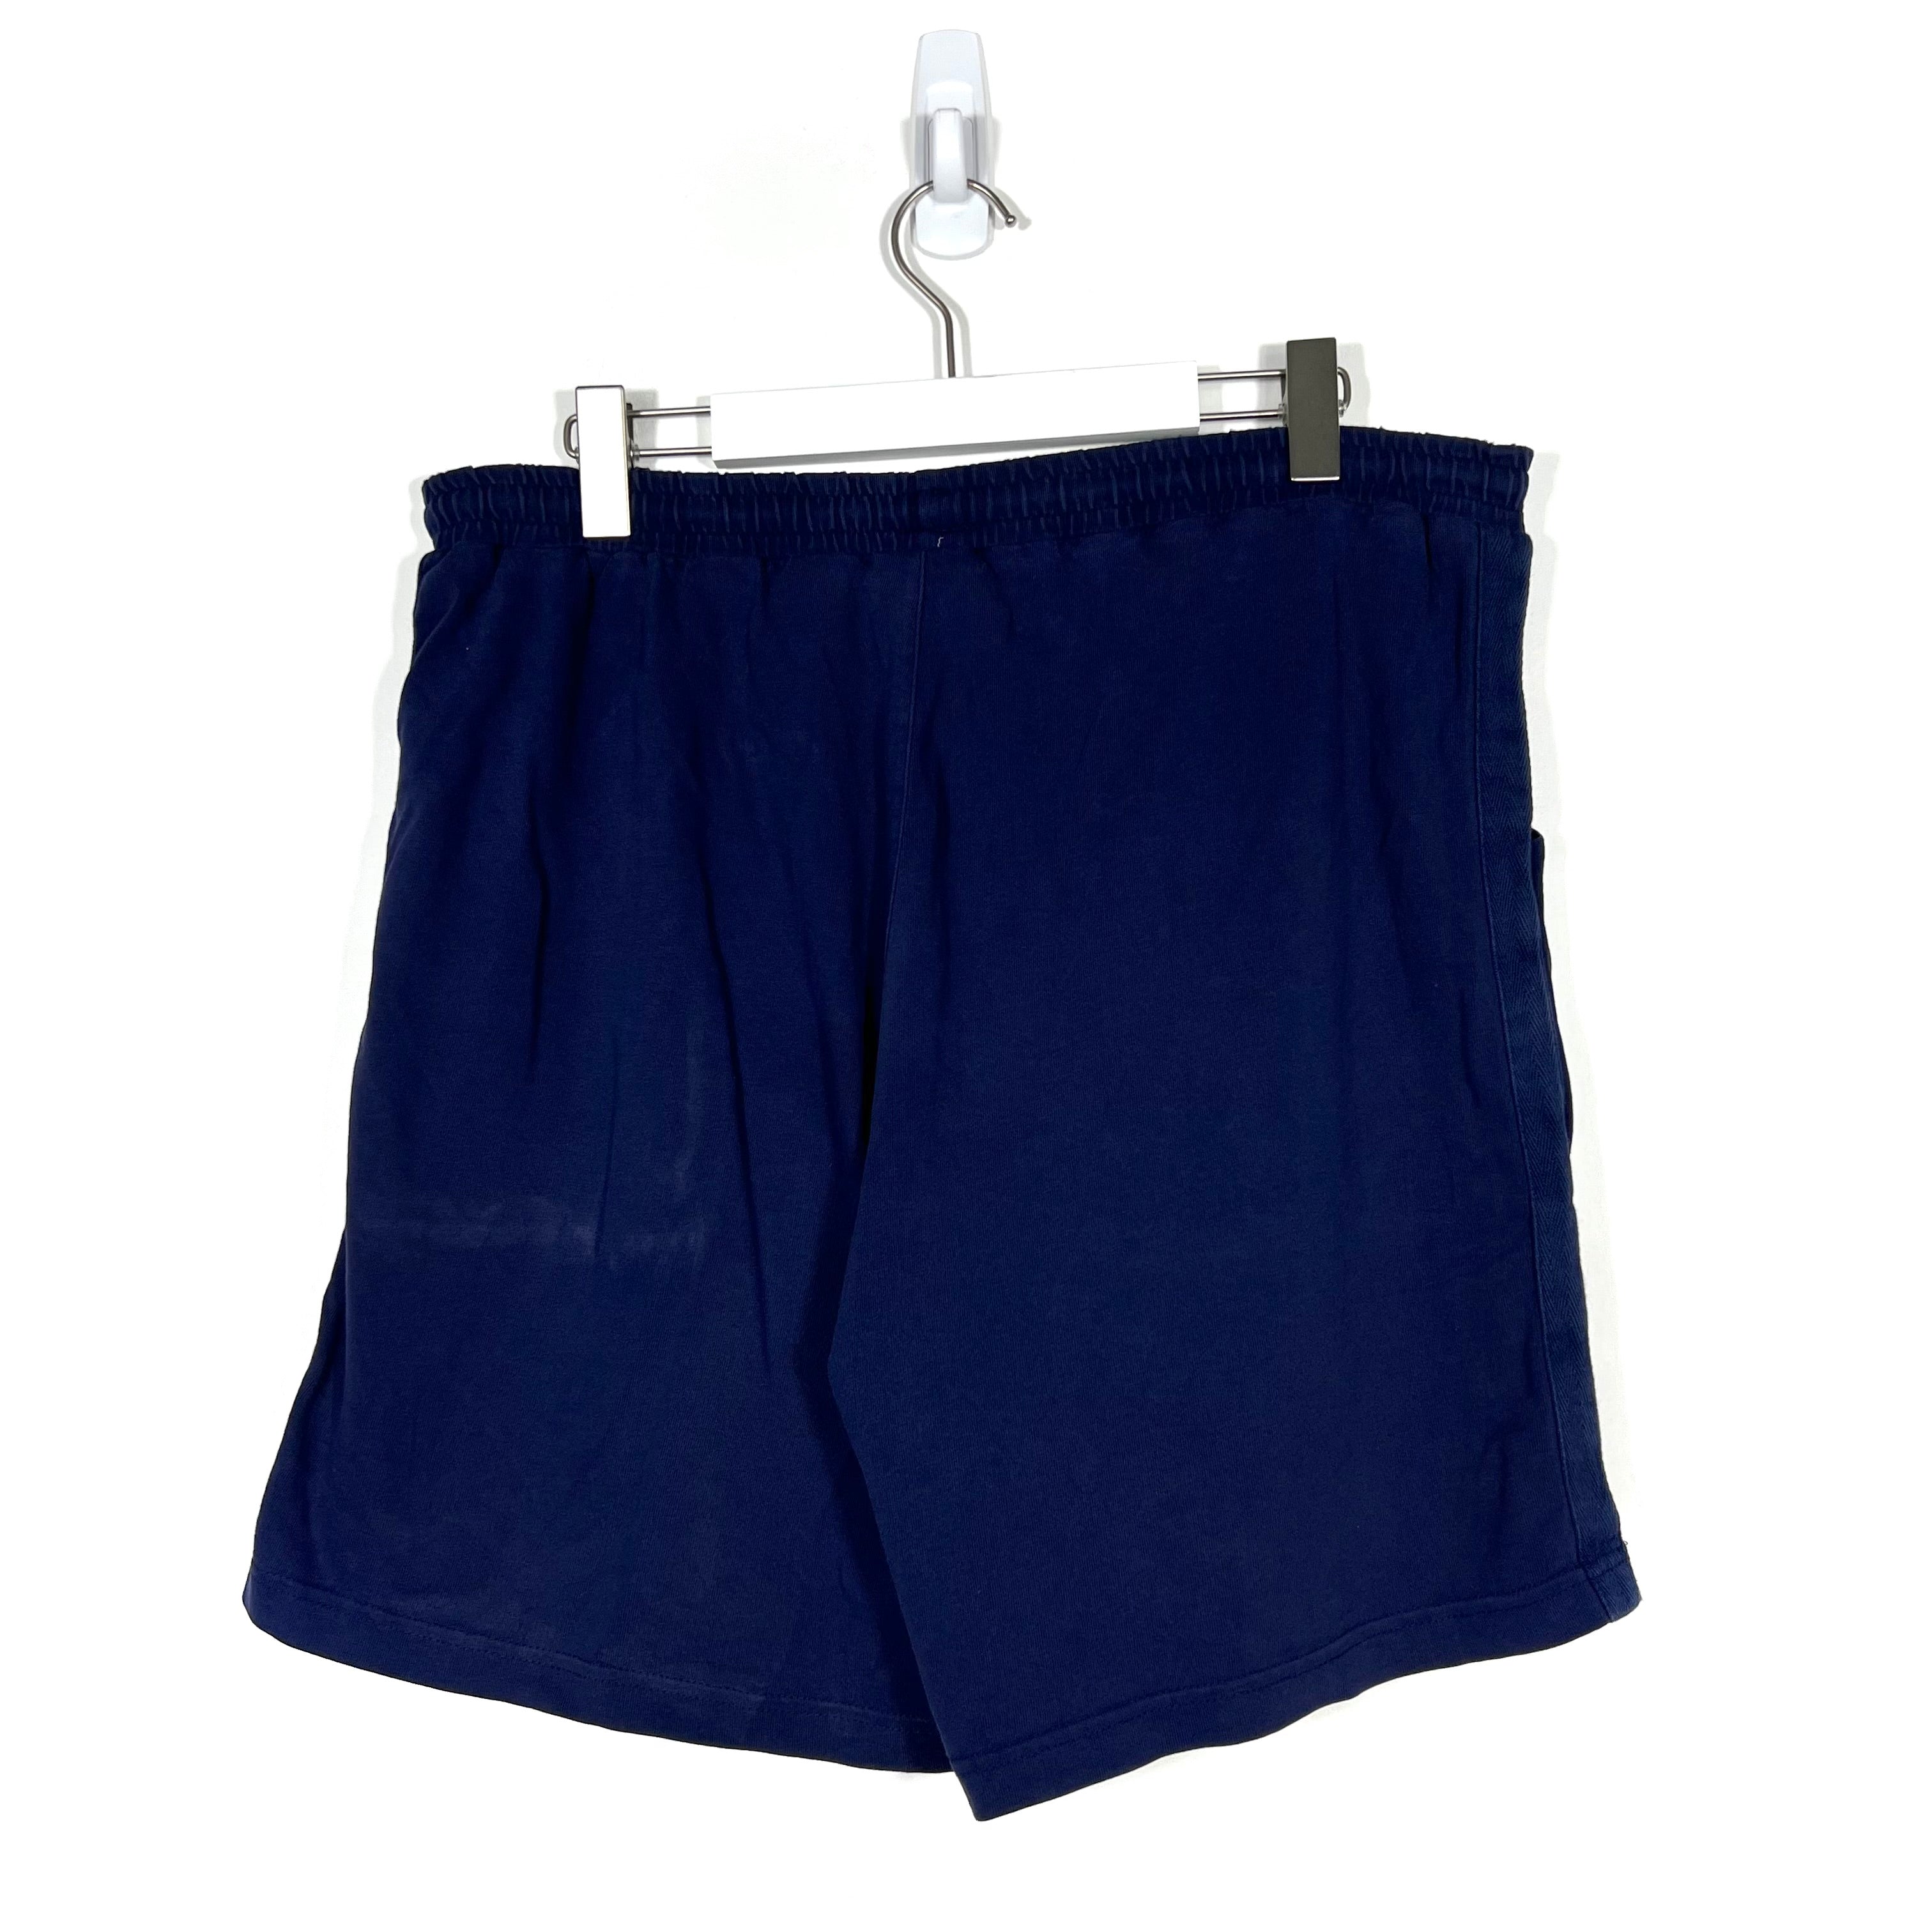 Vintage Fila Shorts - Men's Medium